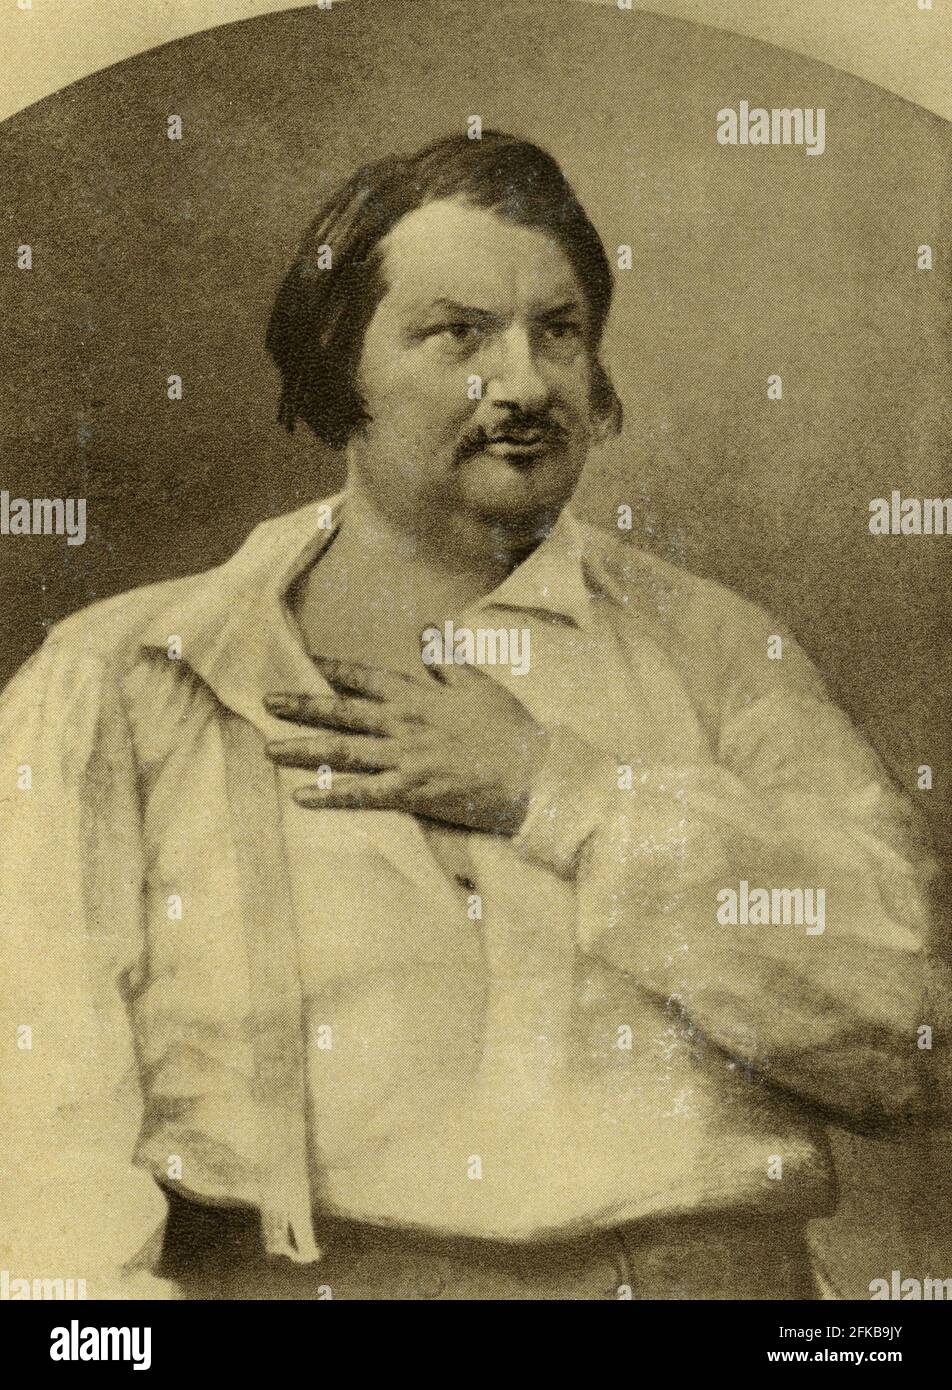 Honoré de Balzac (1799-1850) scrittore francese, considerato uno dei fondatori del realismo moderno nella letteratura europea. Ha iniziato il projet 'la Comédie Humaine' (una collezione multi-volume di romanzi e storie interconnessi) intorno al 1833. Fotografia del 1852. Parigi, Fondazione Napoléon Foto Stock